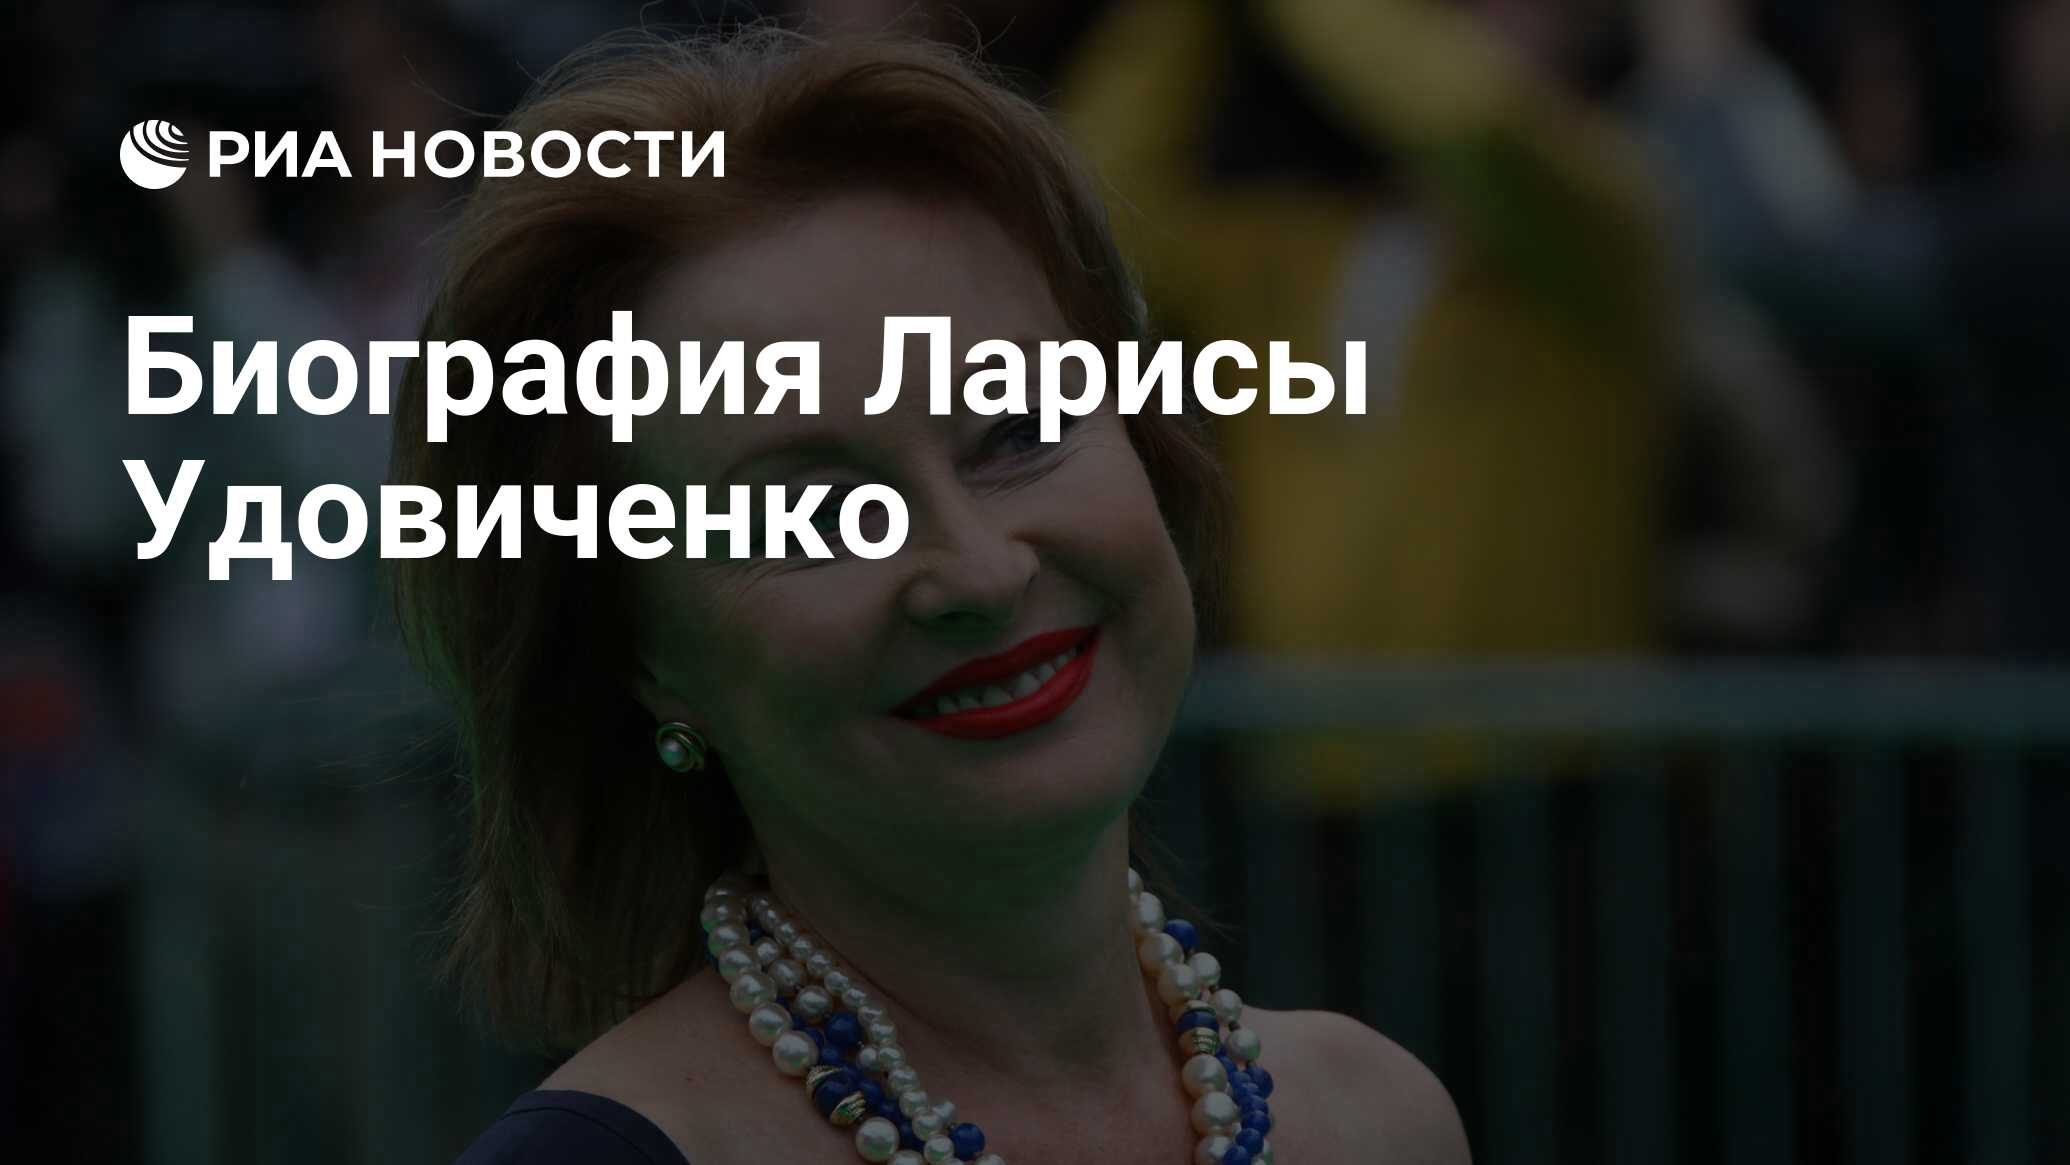 Биография Ларисы Удовиченко - РИА Новости, 29.04.2020